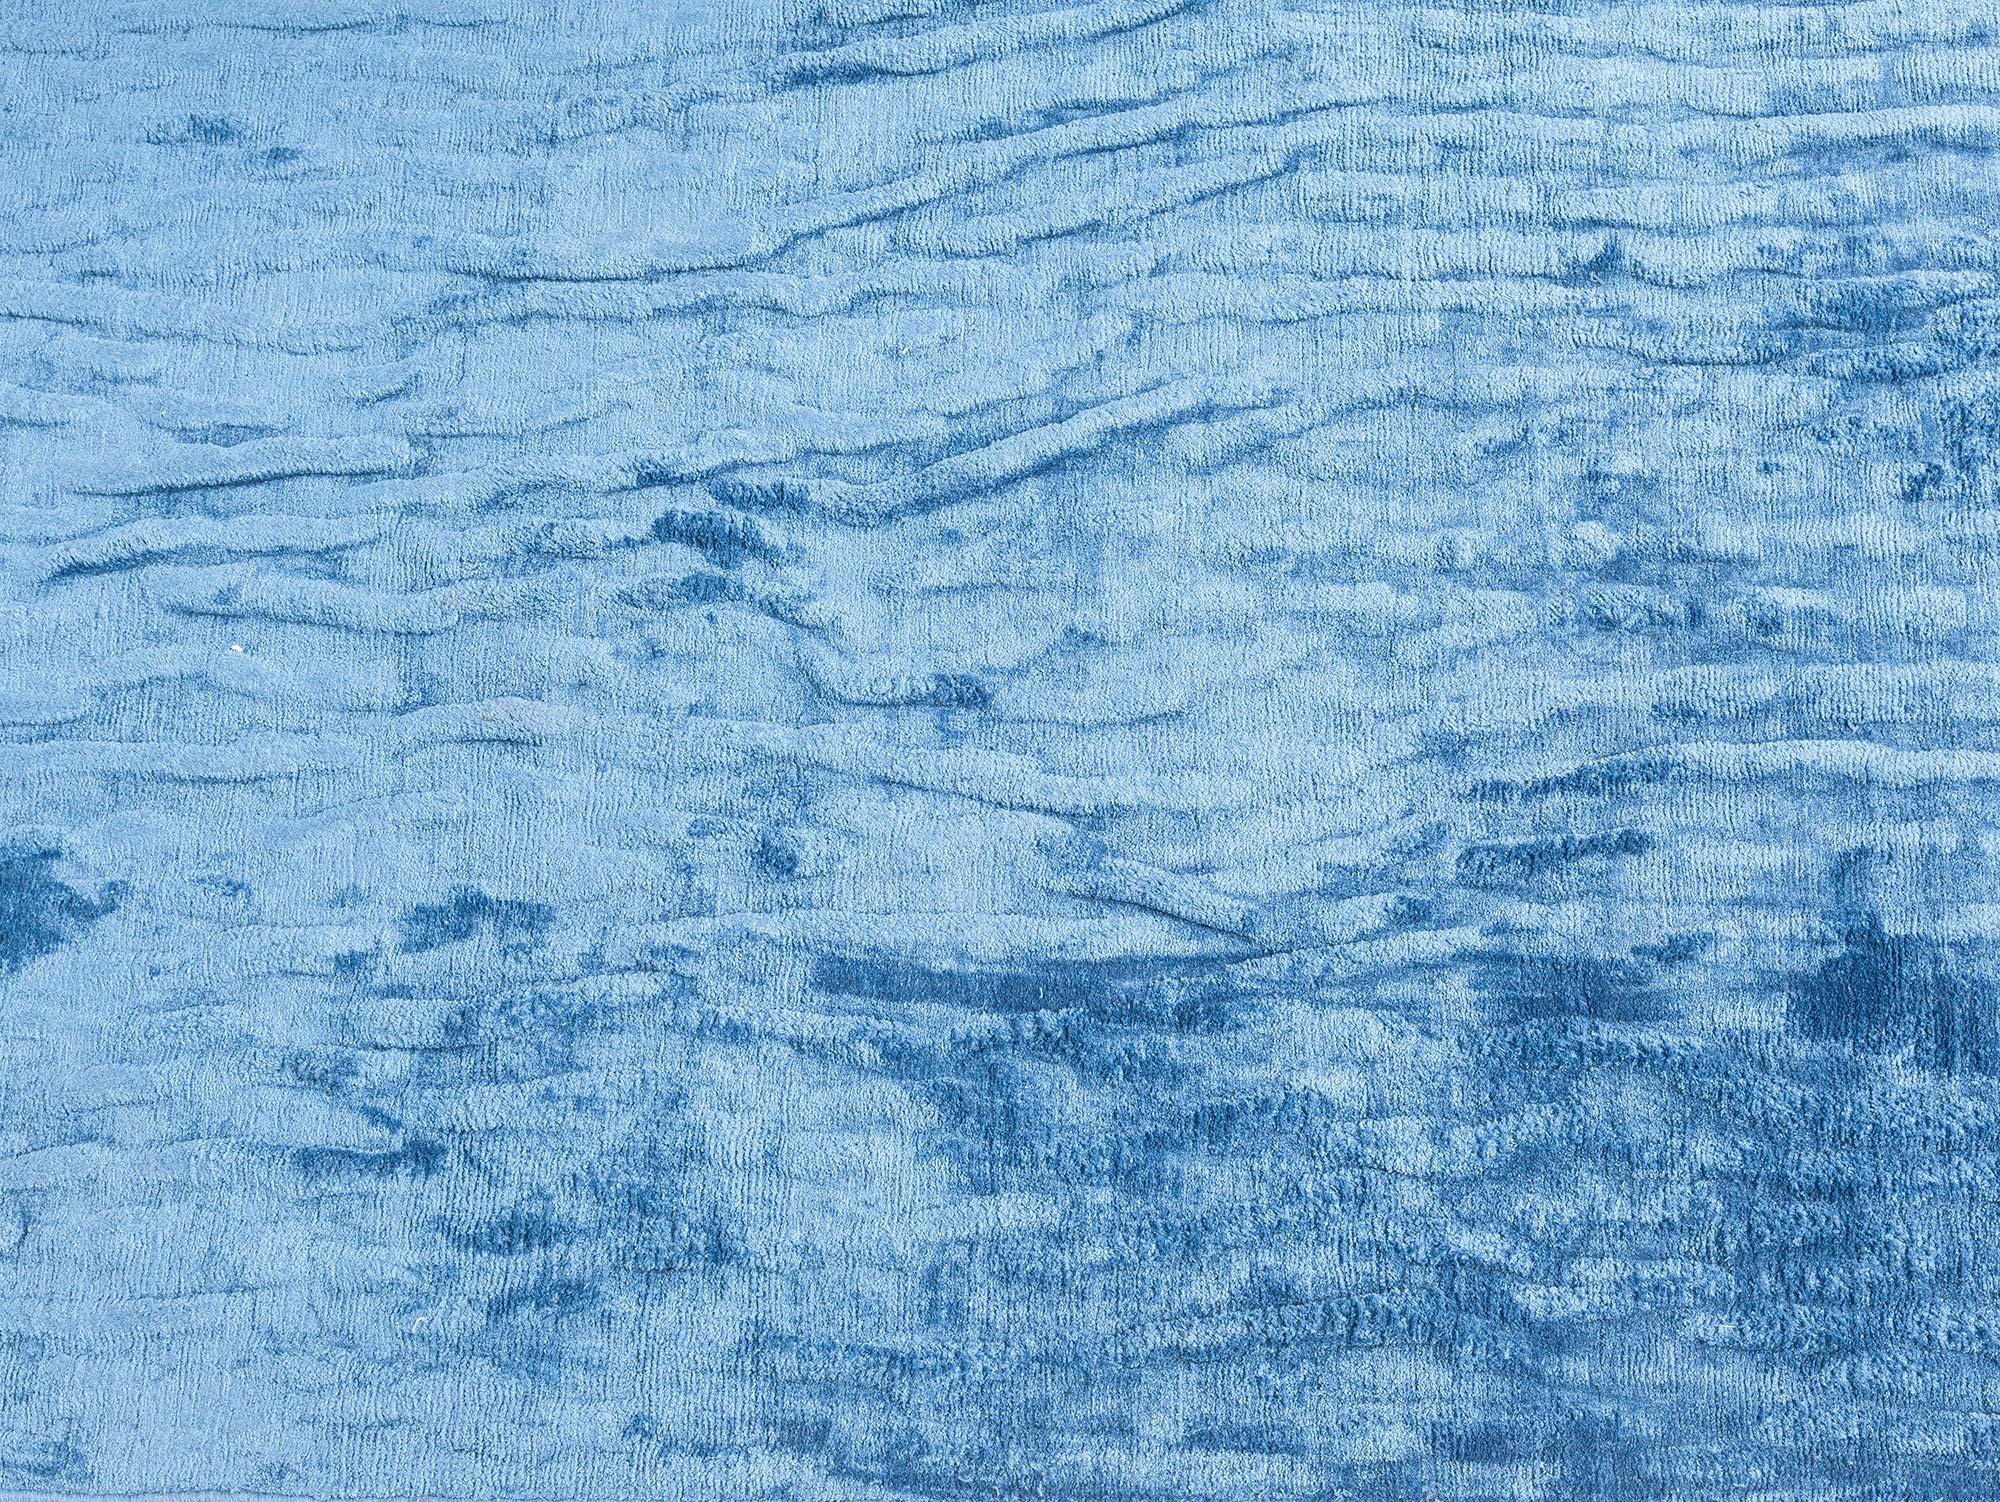 Chemin de table contemporain en soie bleue
Taille : 3'3